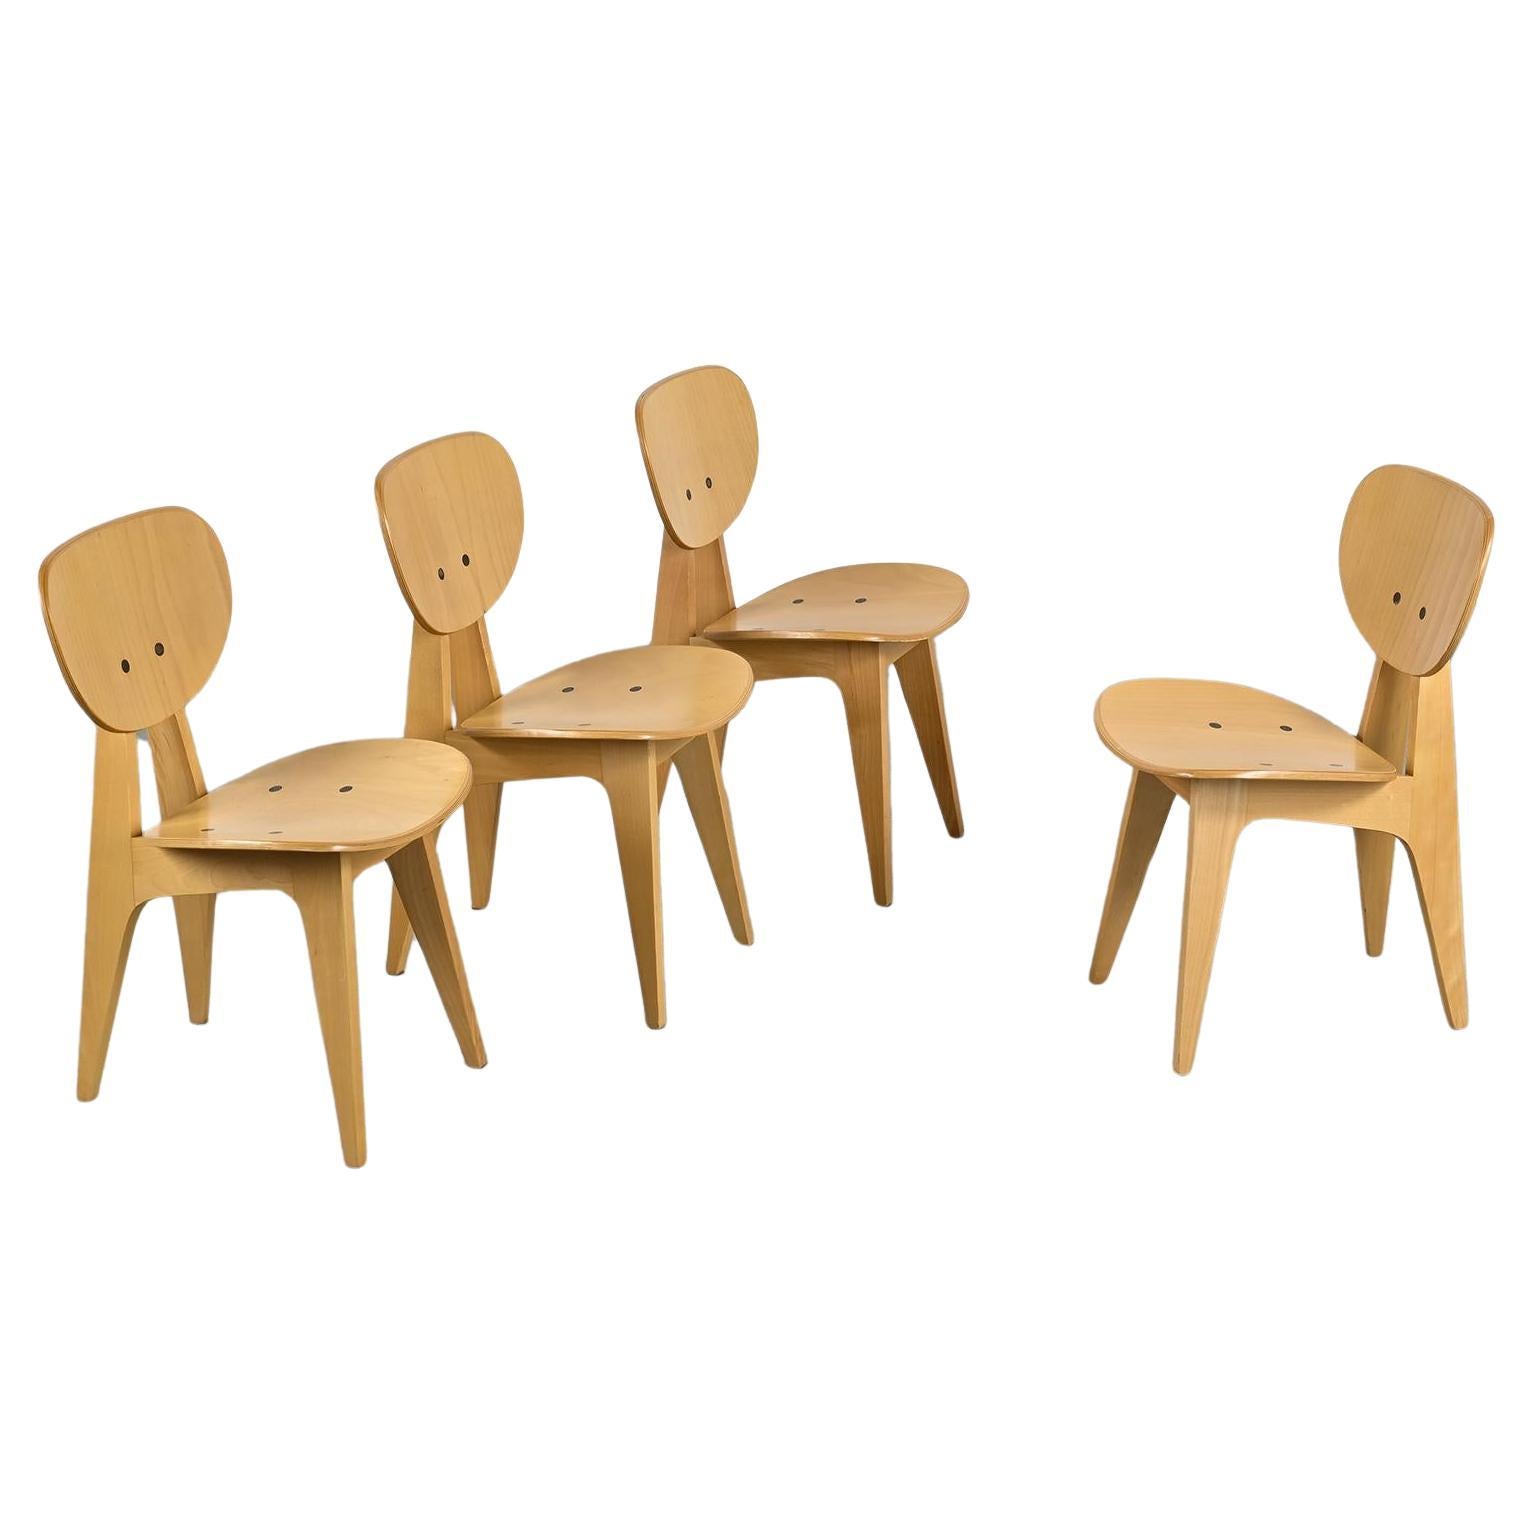 Stühle 3221 von Jenzo Sakakura für Tendo Mokko, 1950er Jahre, 4er-Set, Stühle